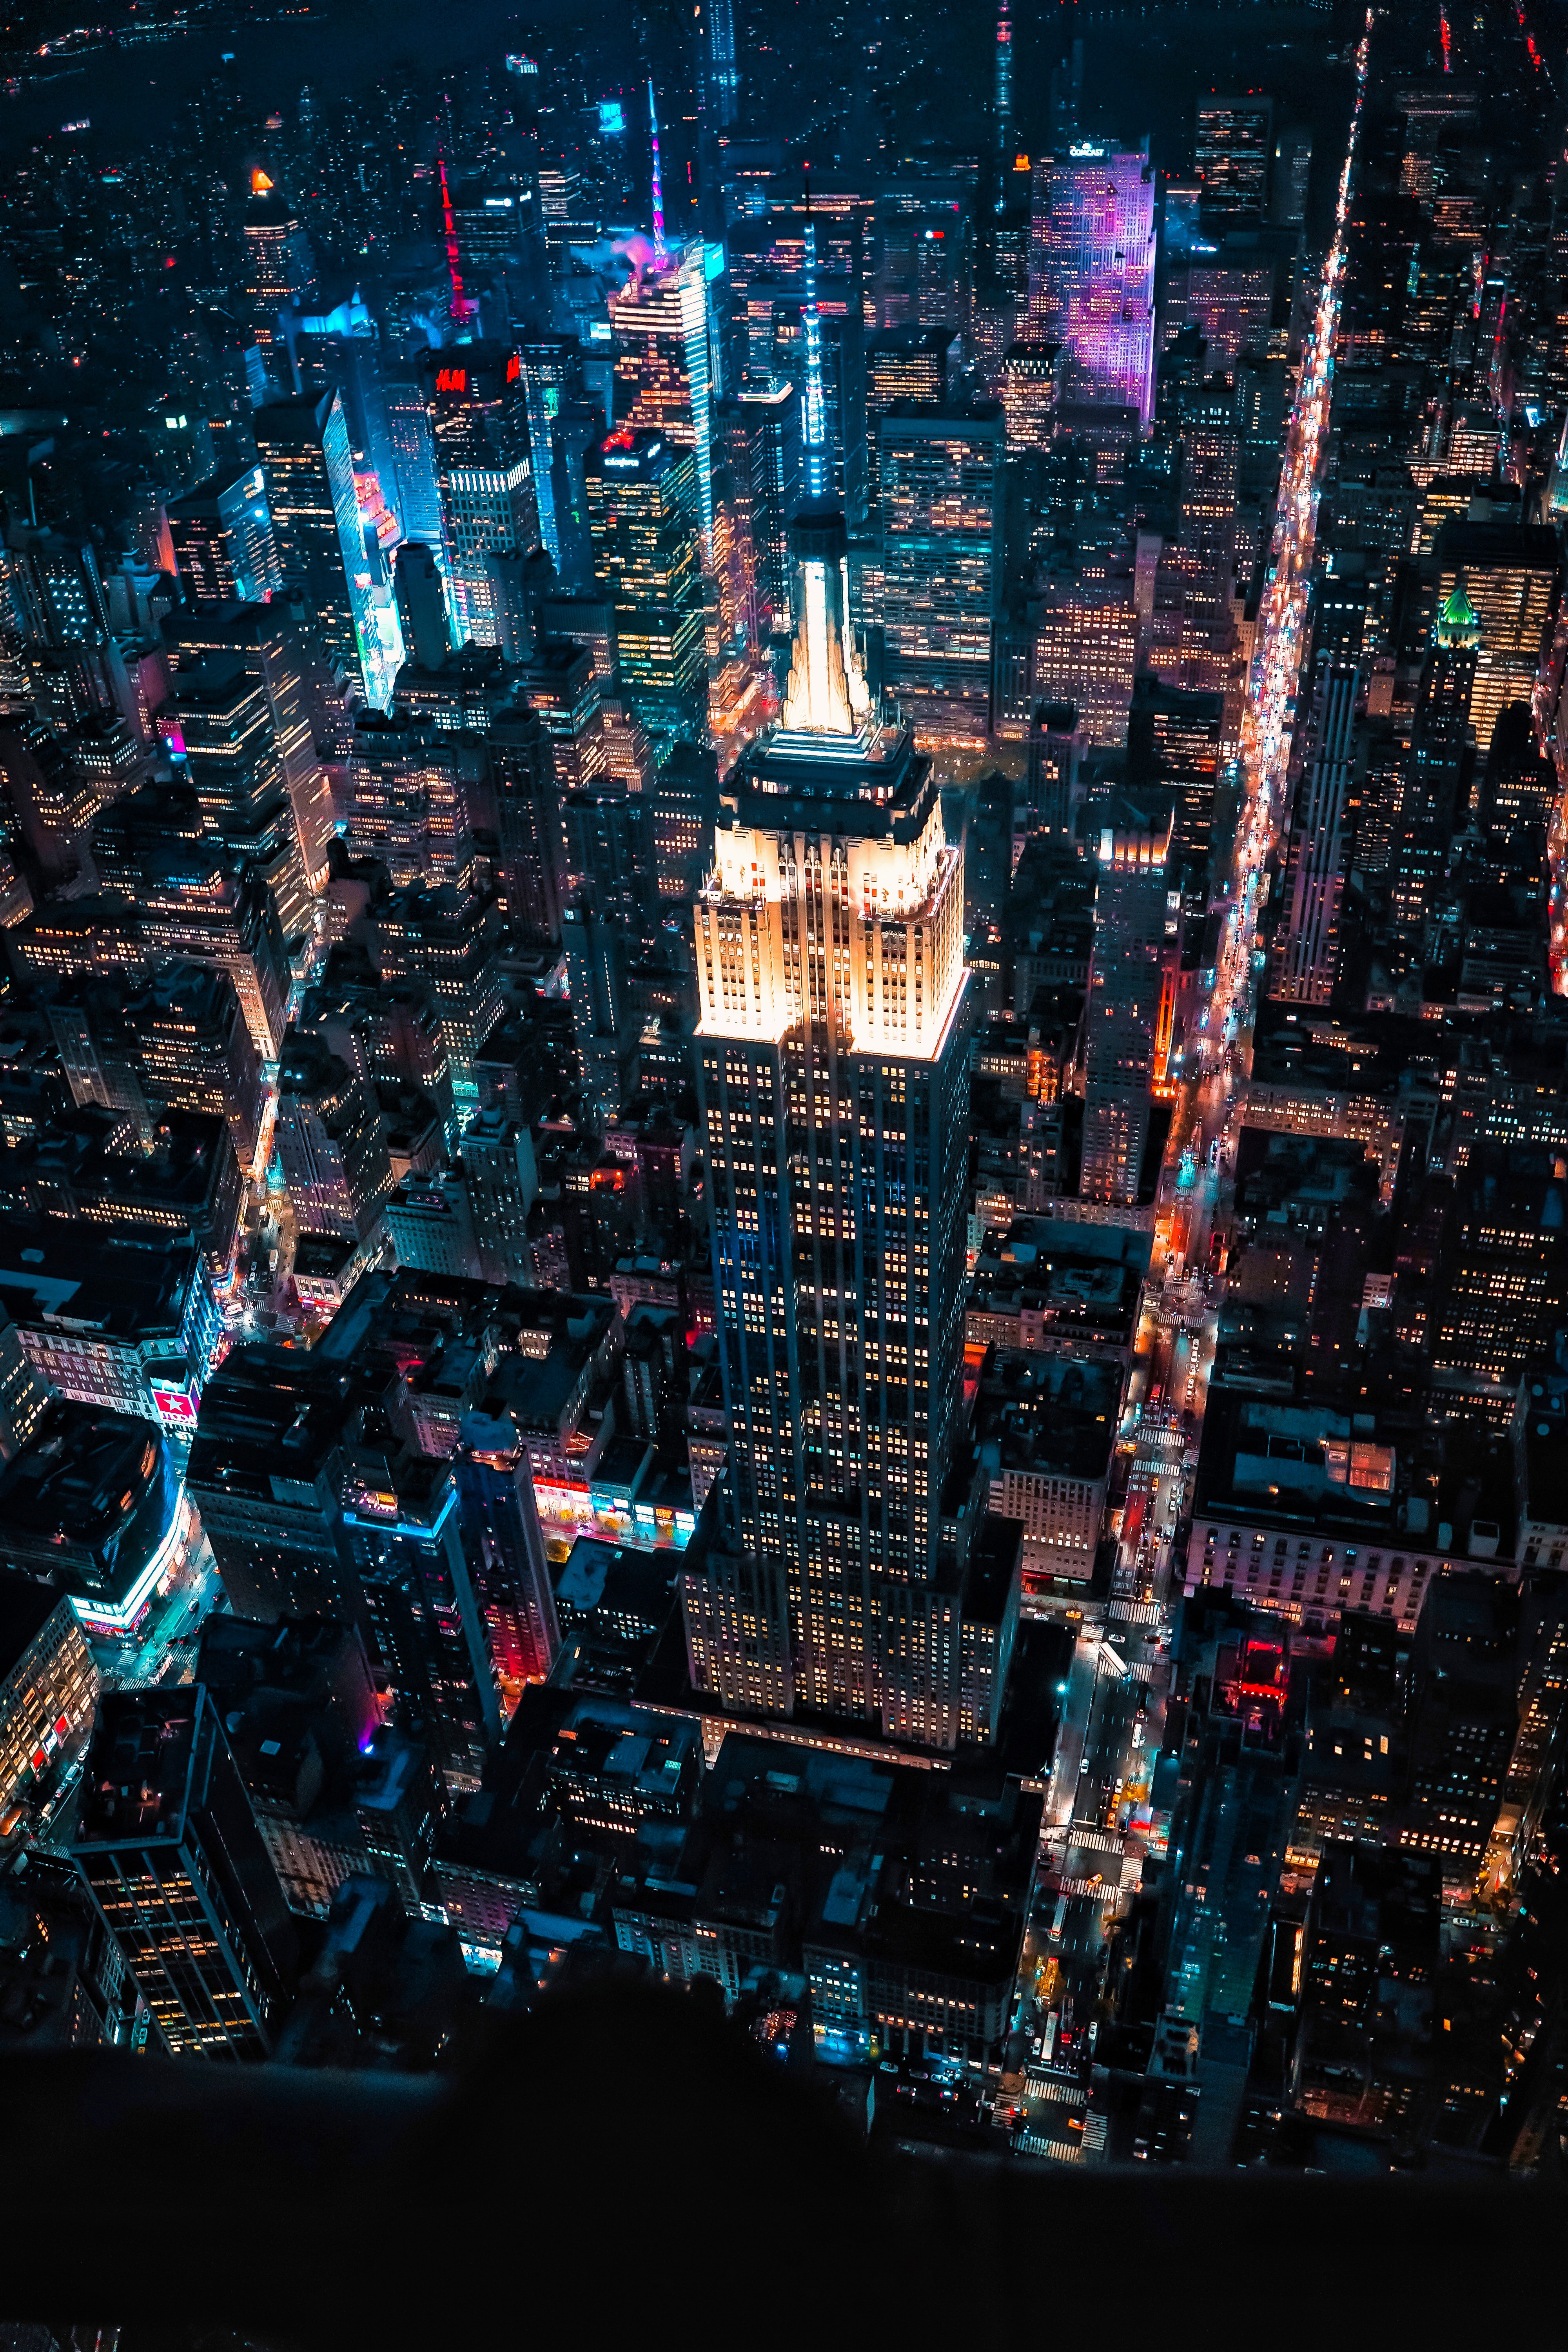 Скачать обои Ночной Город на телефон в высоком качестве, вертикальные  картинки Ночной Город бесплатно